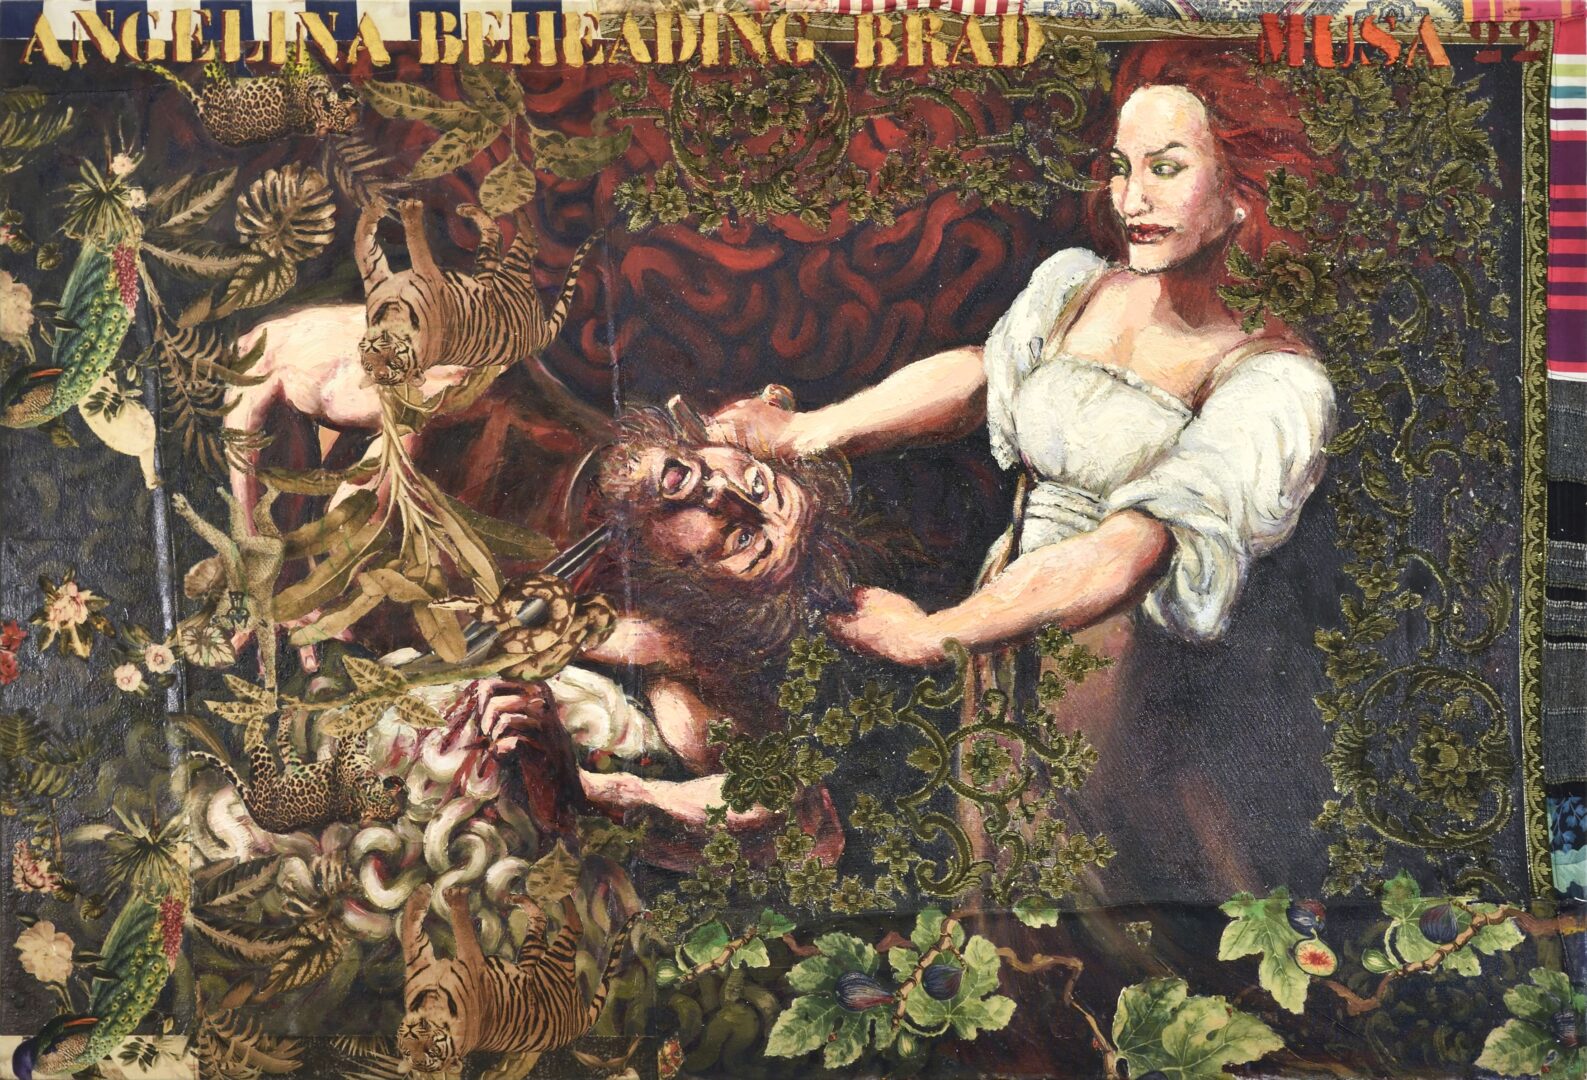 Hassan Musa, Angelina beheading Brad (d’après Caravaggio), 2022, Huile sur tissus imprimés sur bois, 106 x 155 cm